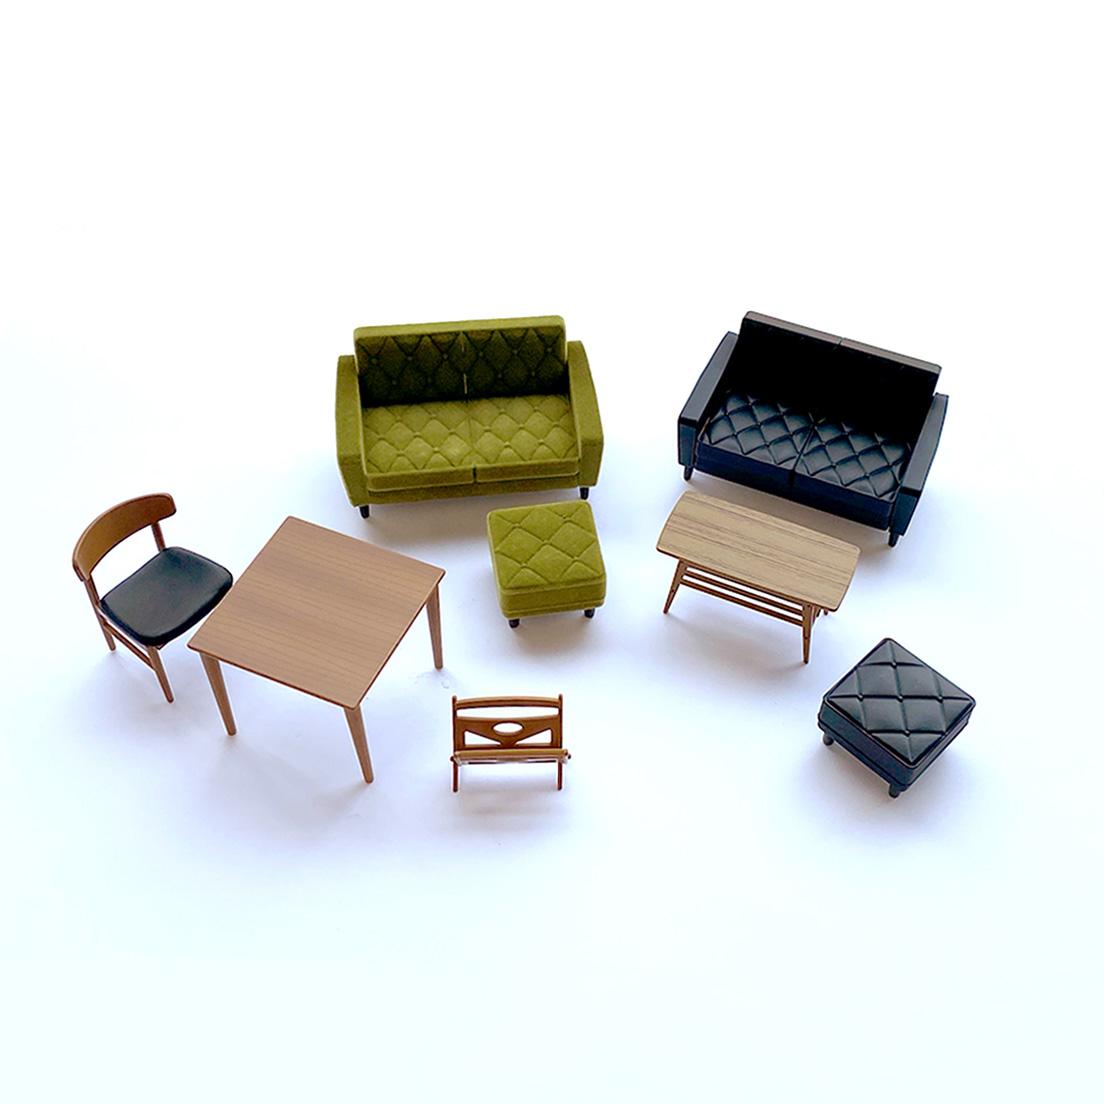 〈カリモク60〉のミニチュア家具たち。